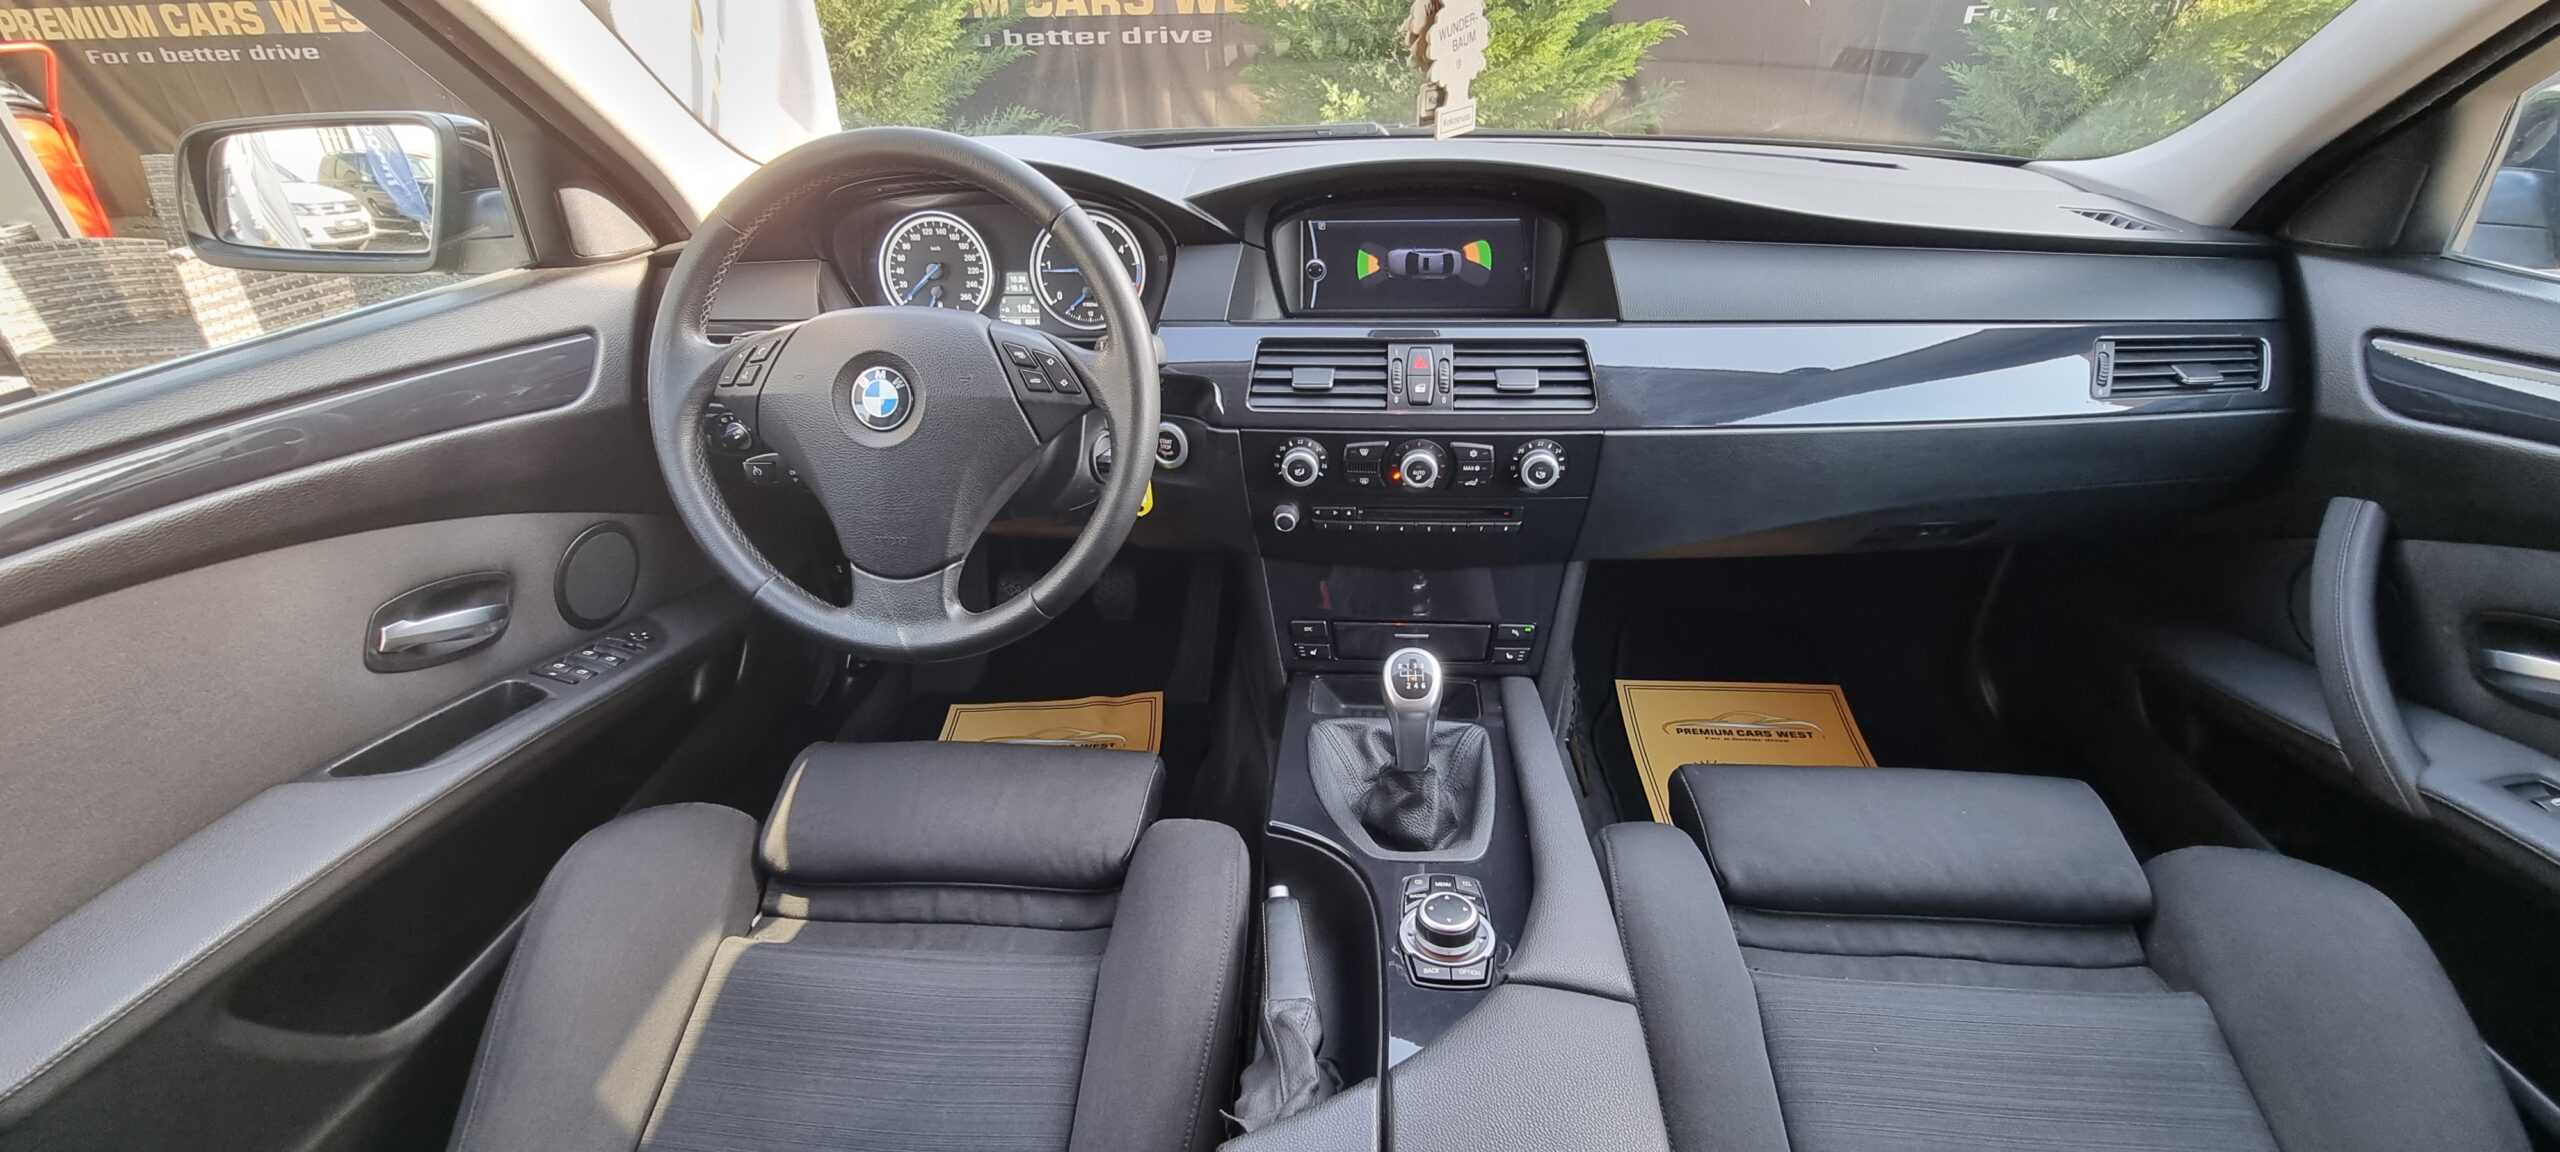 BMW SERIA 5, 2.0 DIESEL, 177 CP, EURO 5, AN 2009